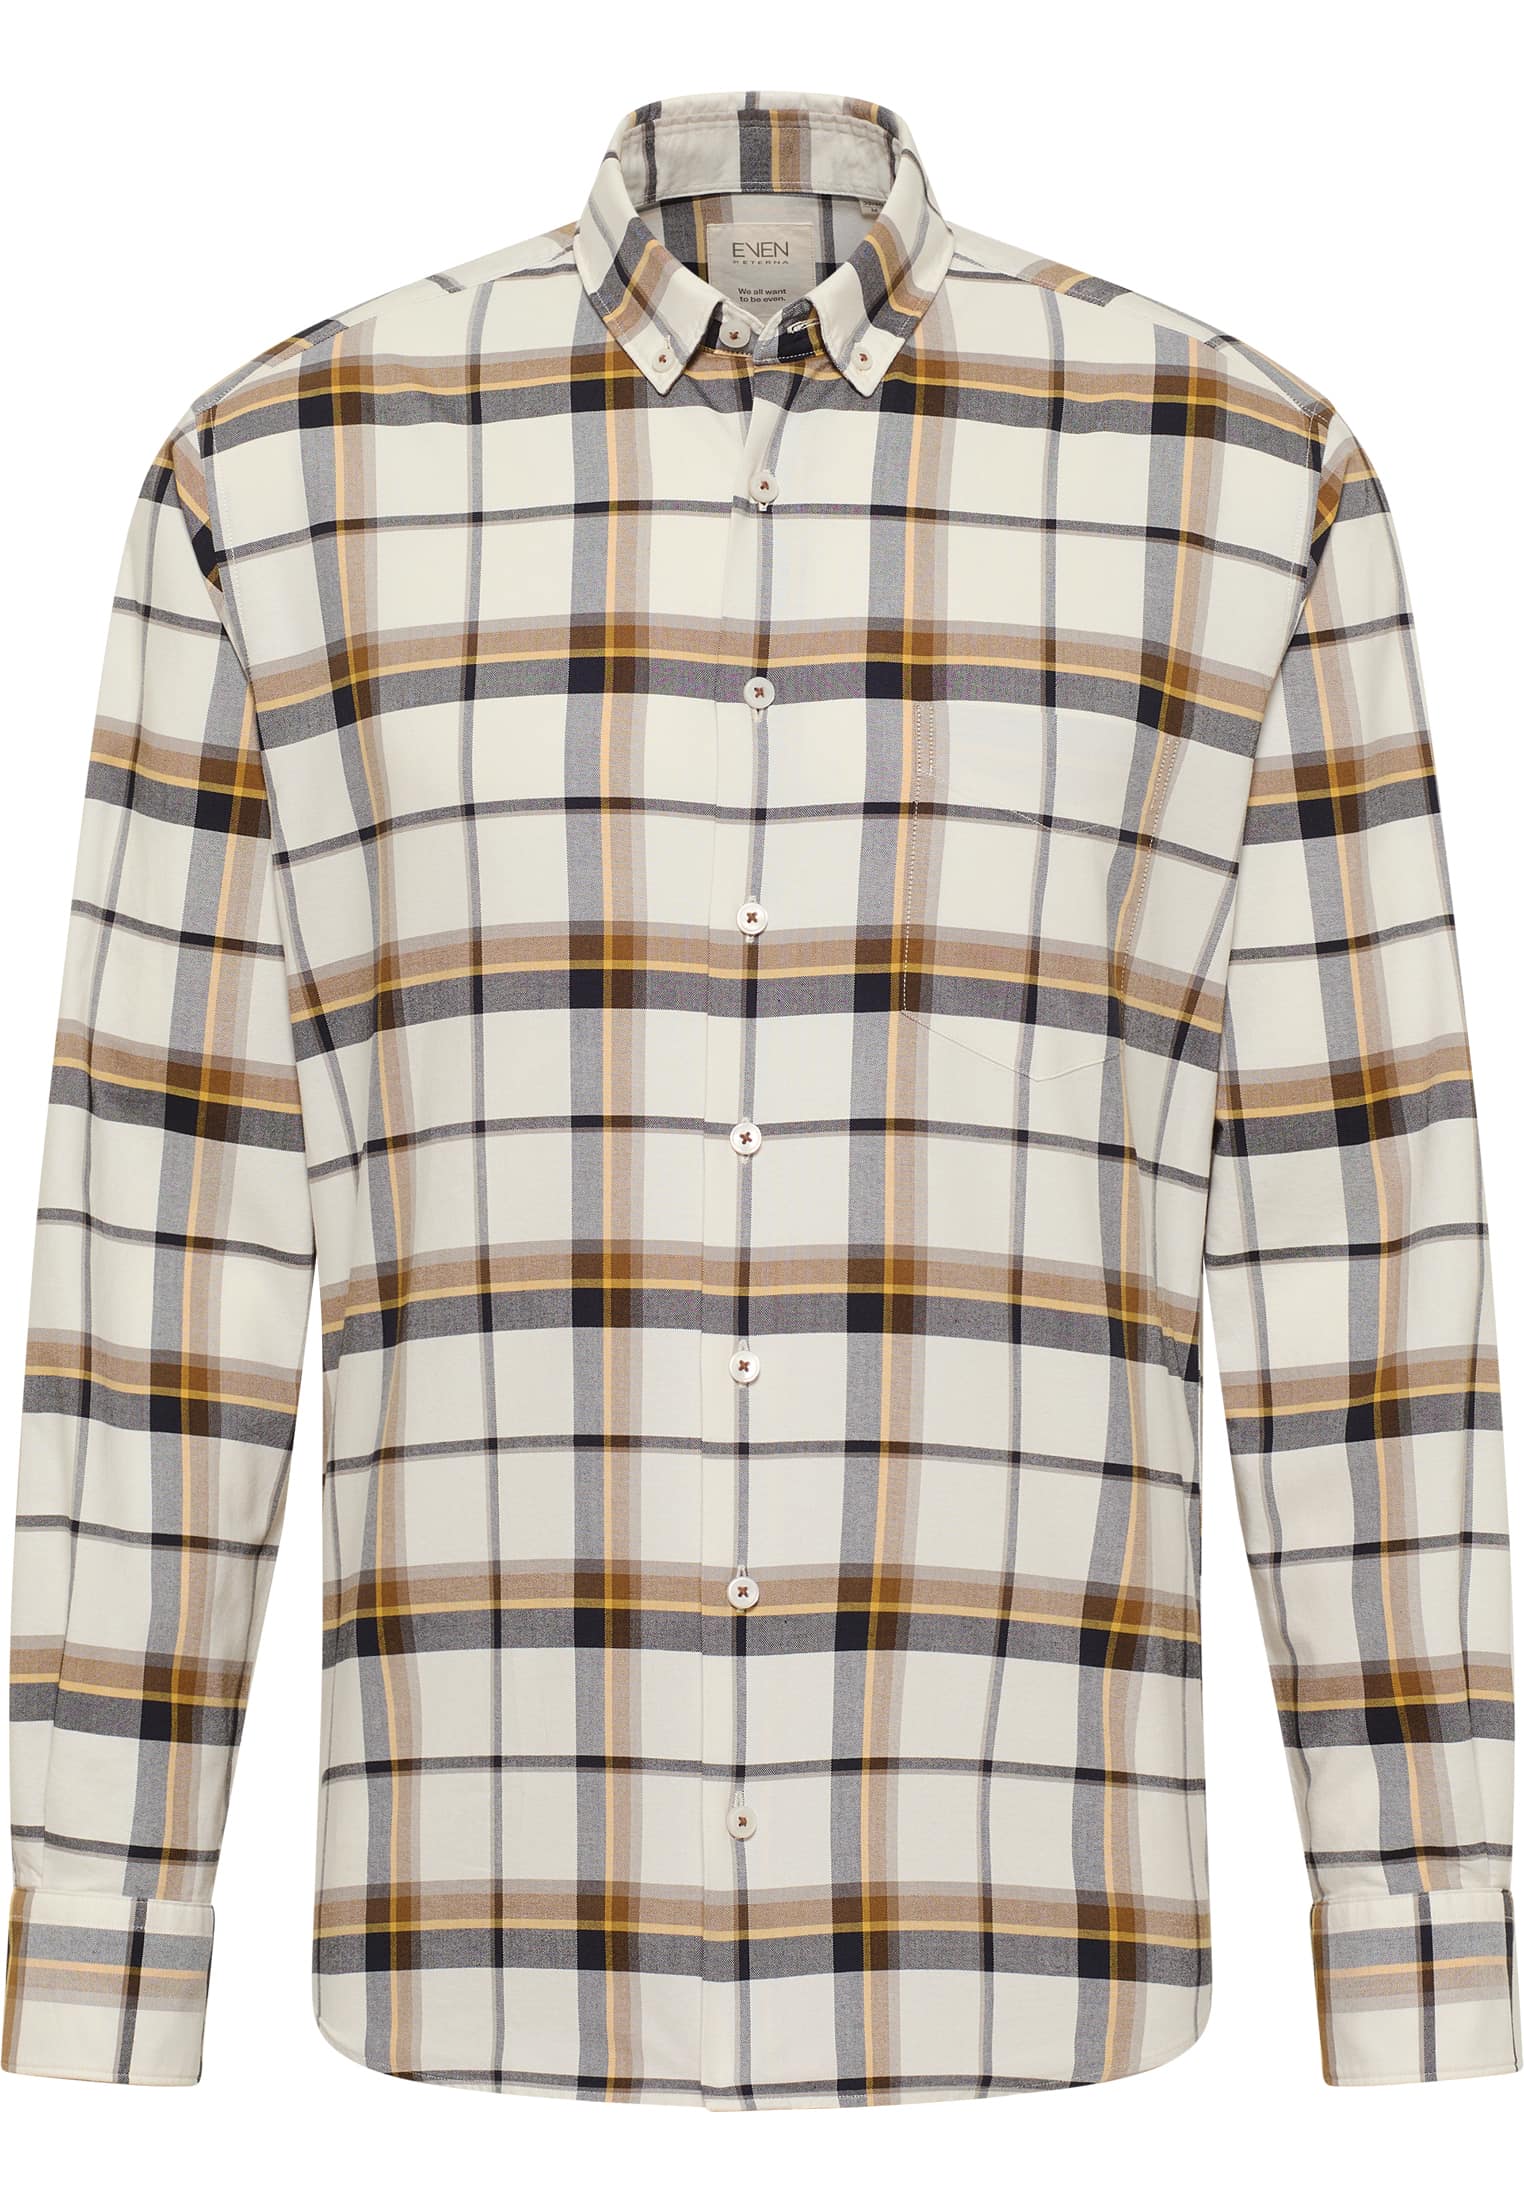 MODERN FIT long | beige | | Shirt XL | checkered sleeve beige 1SH11420-02-01-XL-1/1 in